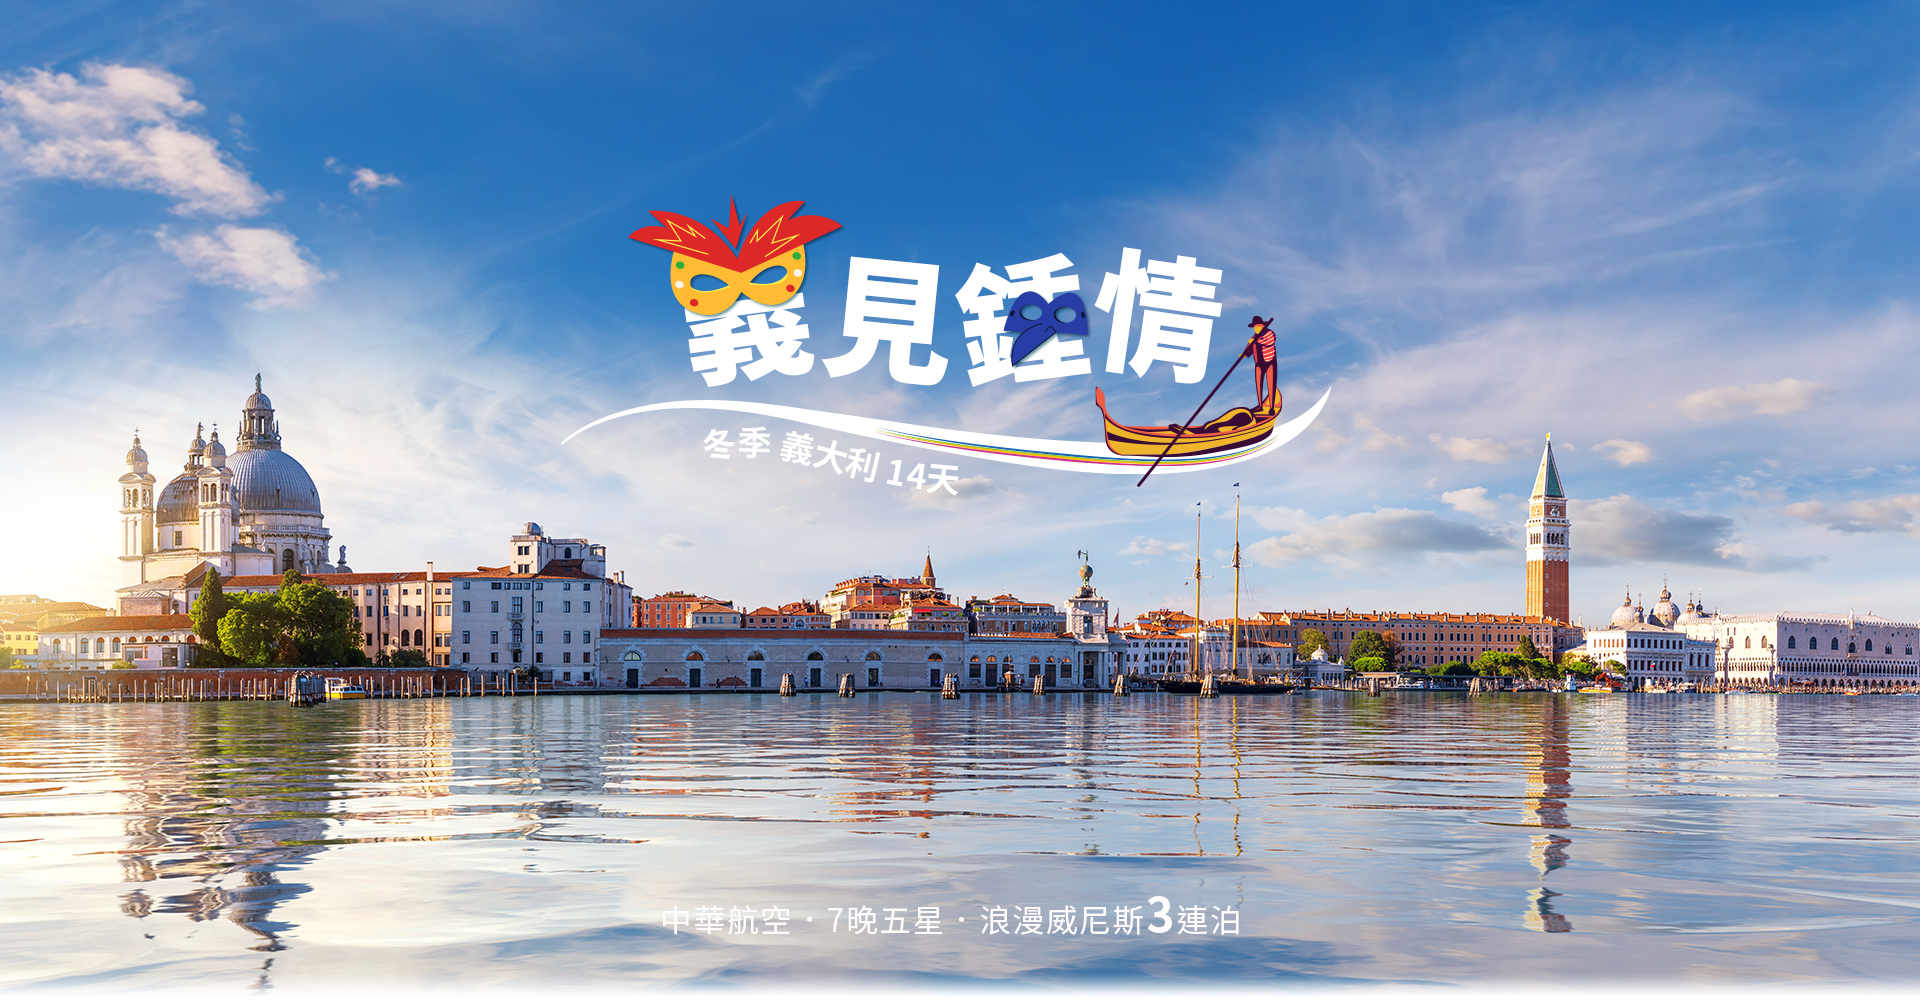 歐洲旅遊  雋品旅行 義大利  中華航空 